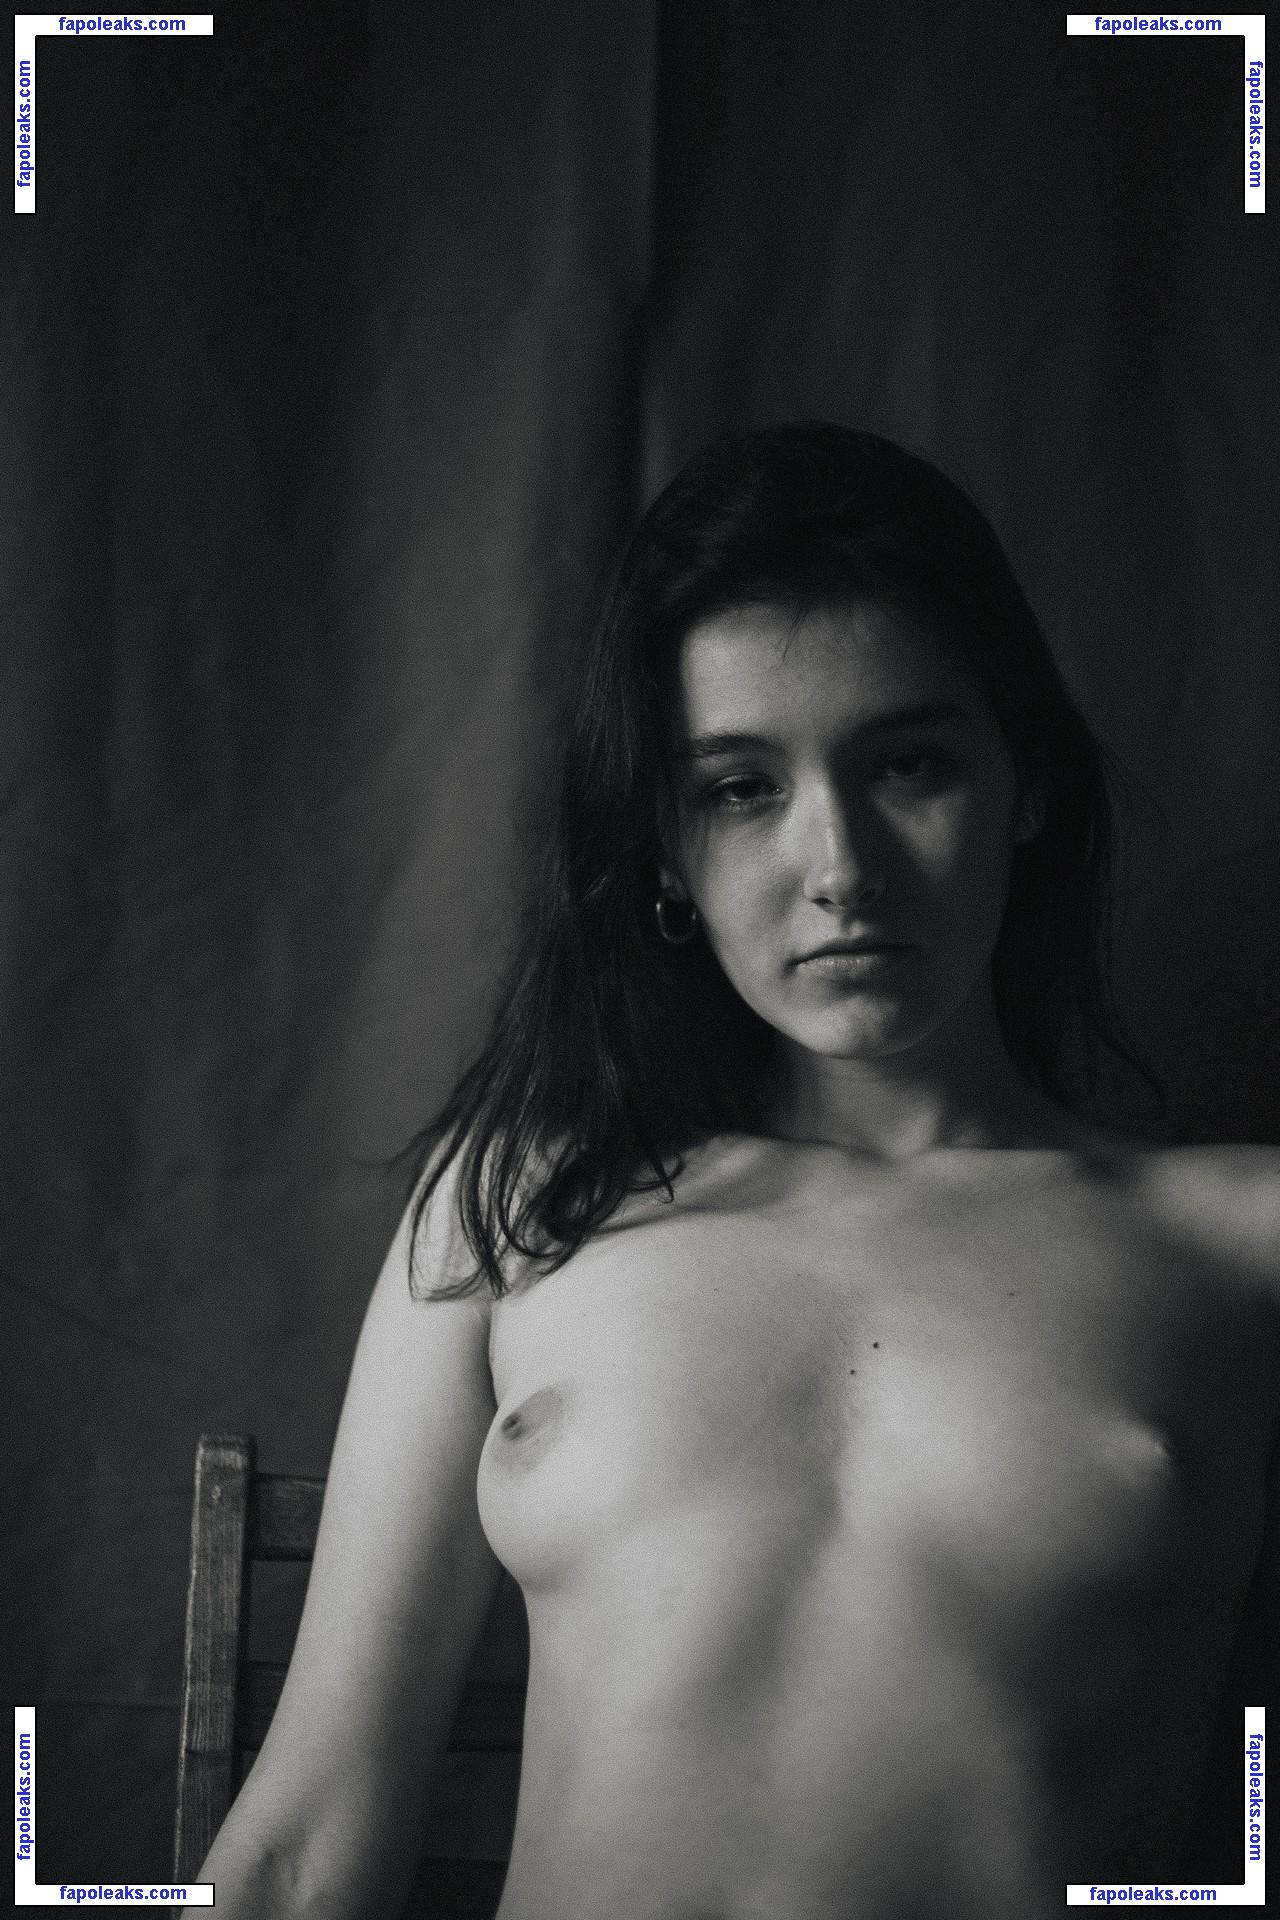 Valeria Shashenok / valeriahaver / valerisssh nude photo #0020 from OnlyFans